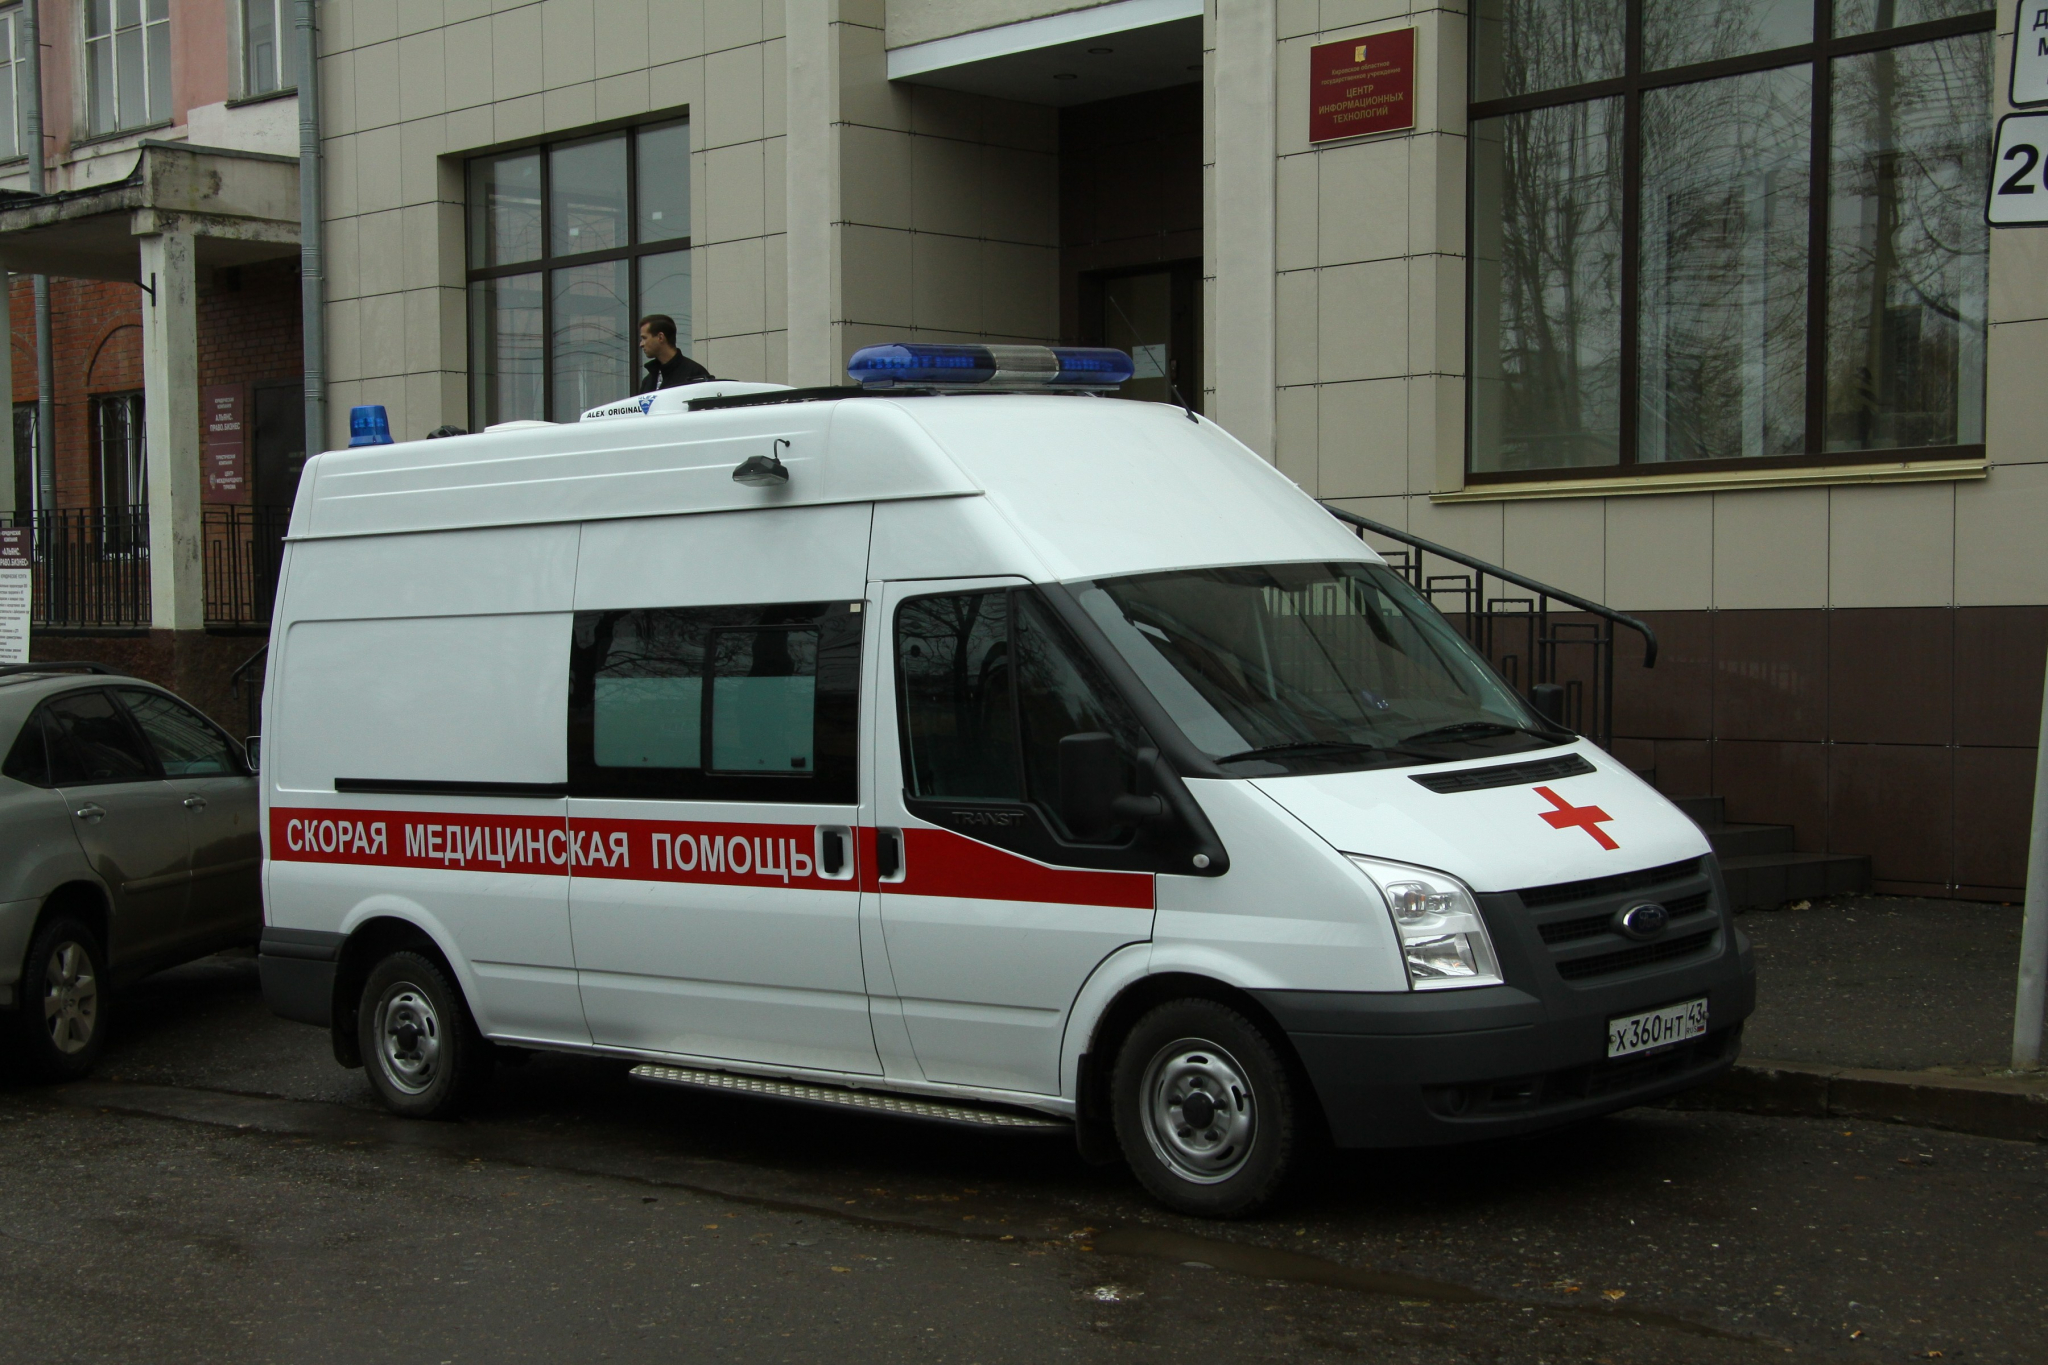 Под Ярославлем 9-летнюю девочку ударило током на стройке